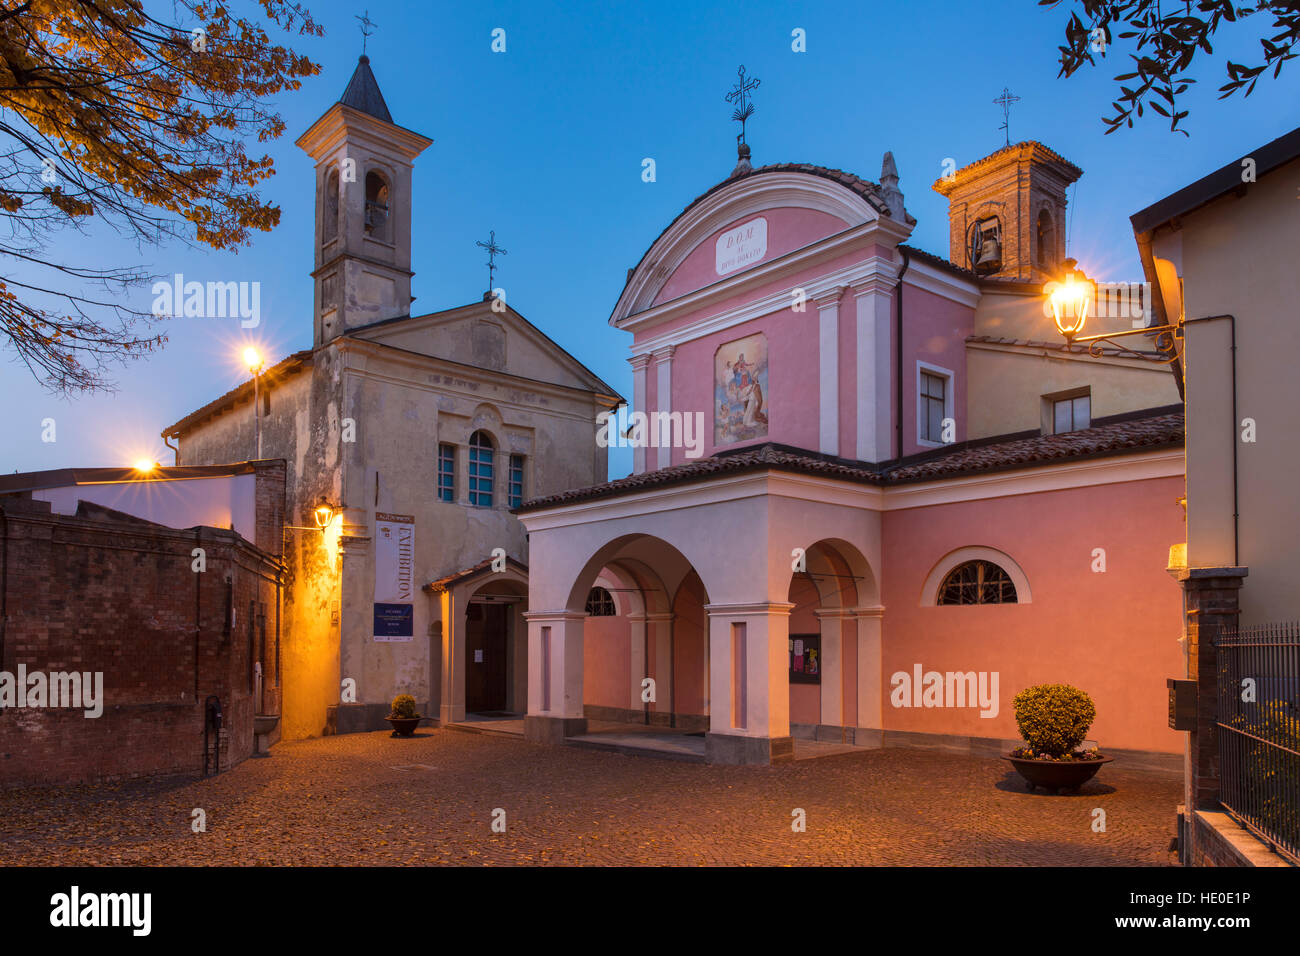 Twilight over the Biblioteca Marchionale and Chiesa di Barolo, Barolo, Piemonte, Italy Stock Photo